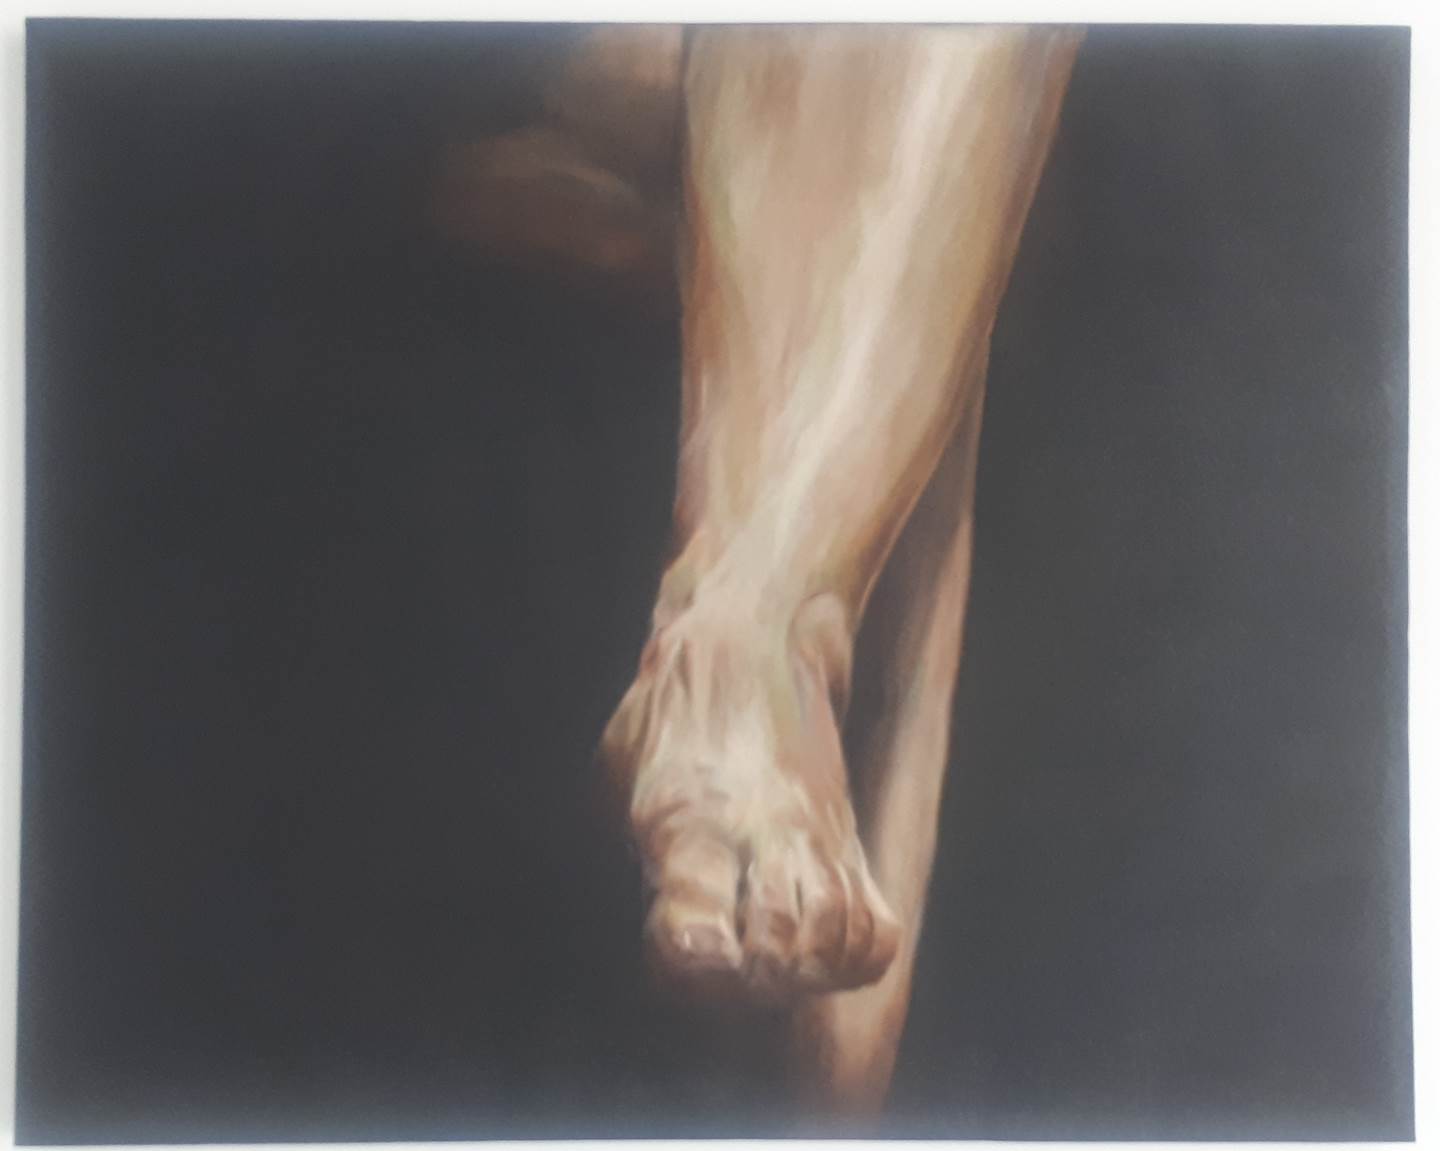 Quarta. Partes do Corpo que não são visíveis., original Body Canvas Painting by Maria  Cunha Alegre